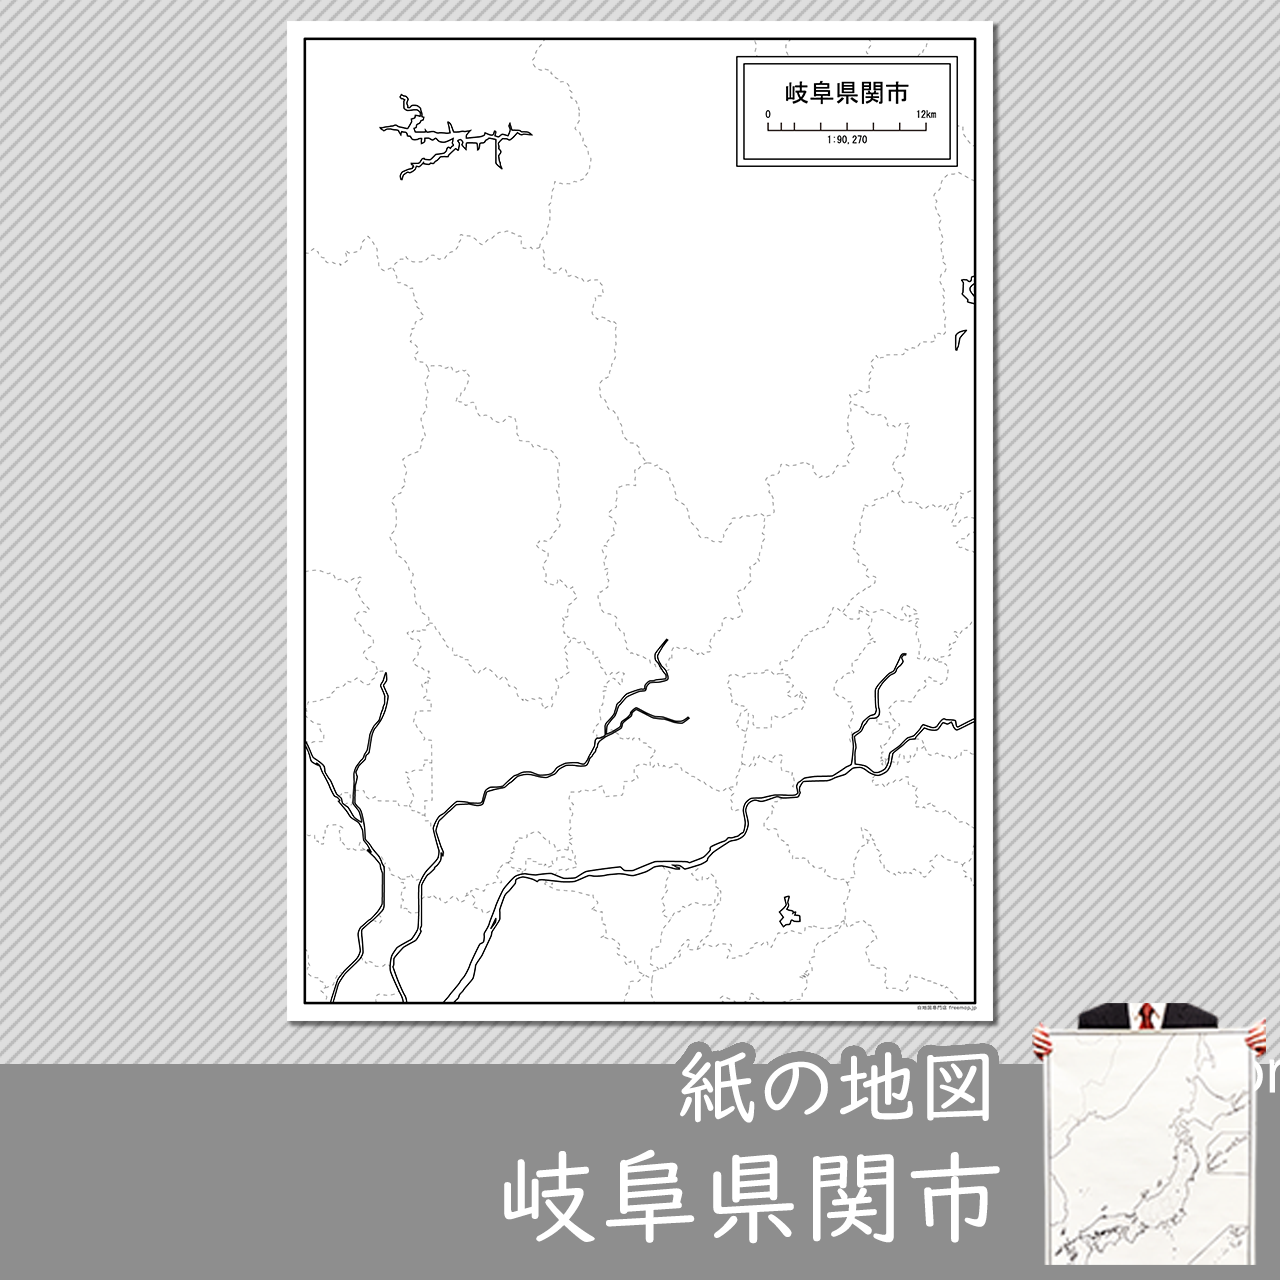 関市の紙の白地図のサムネイル